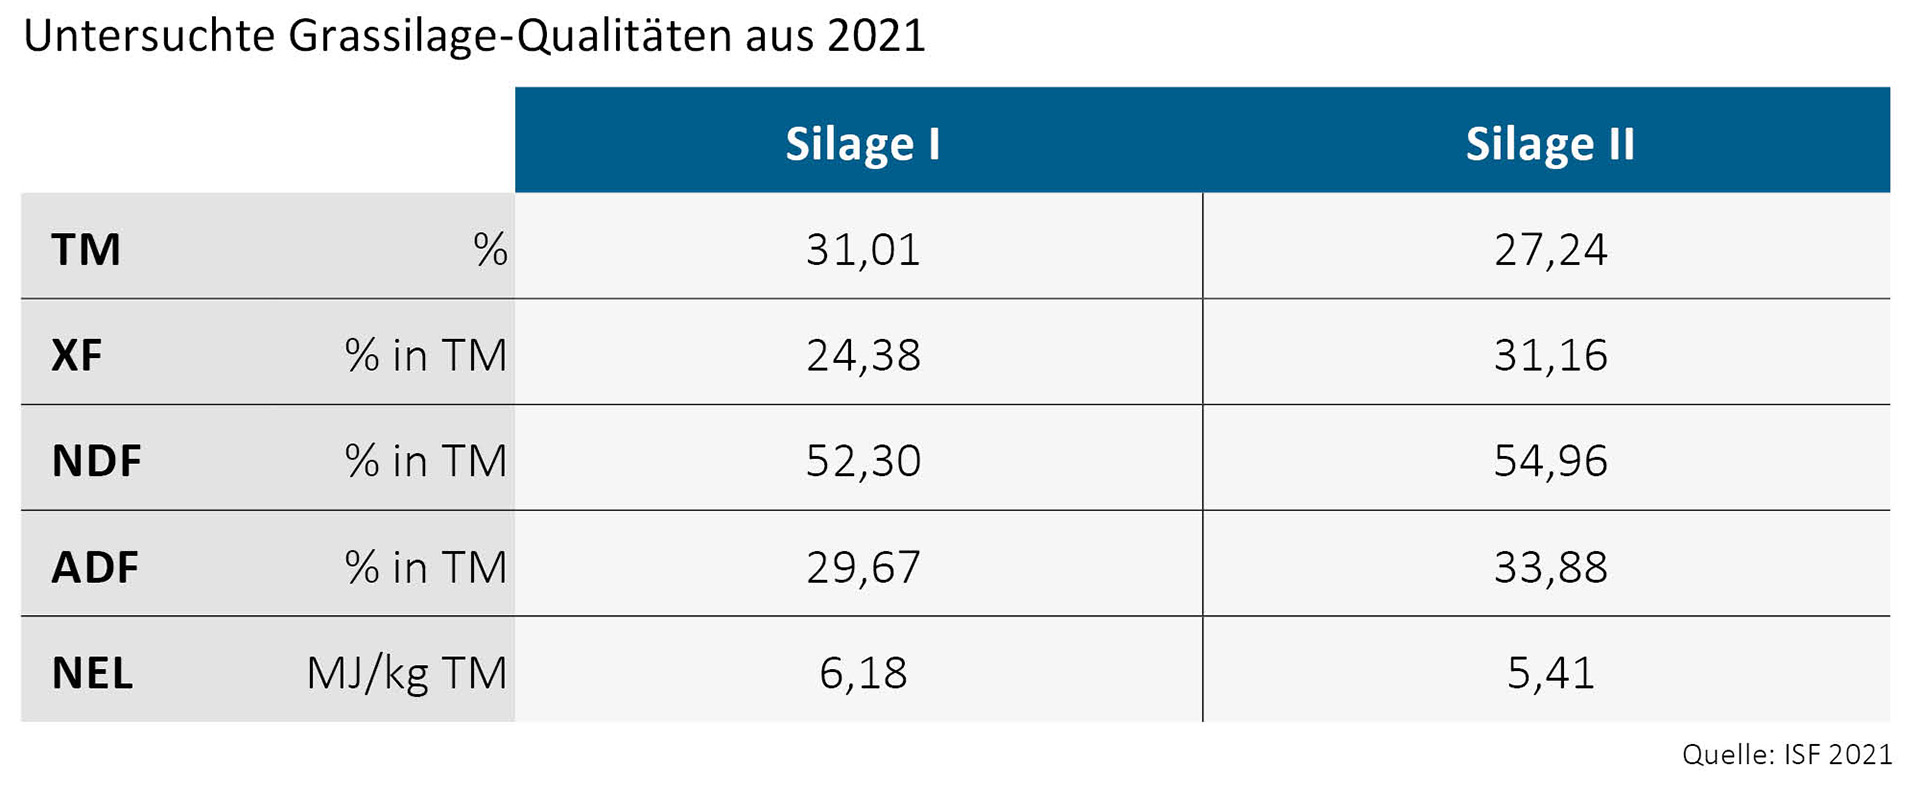 Tabelle zu den untersuchte Grassilage-Qualitäten aus 2021